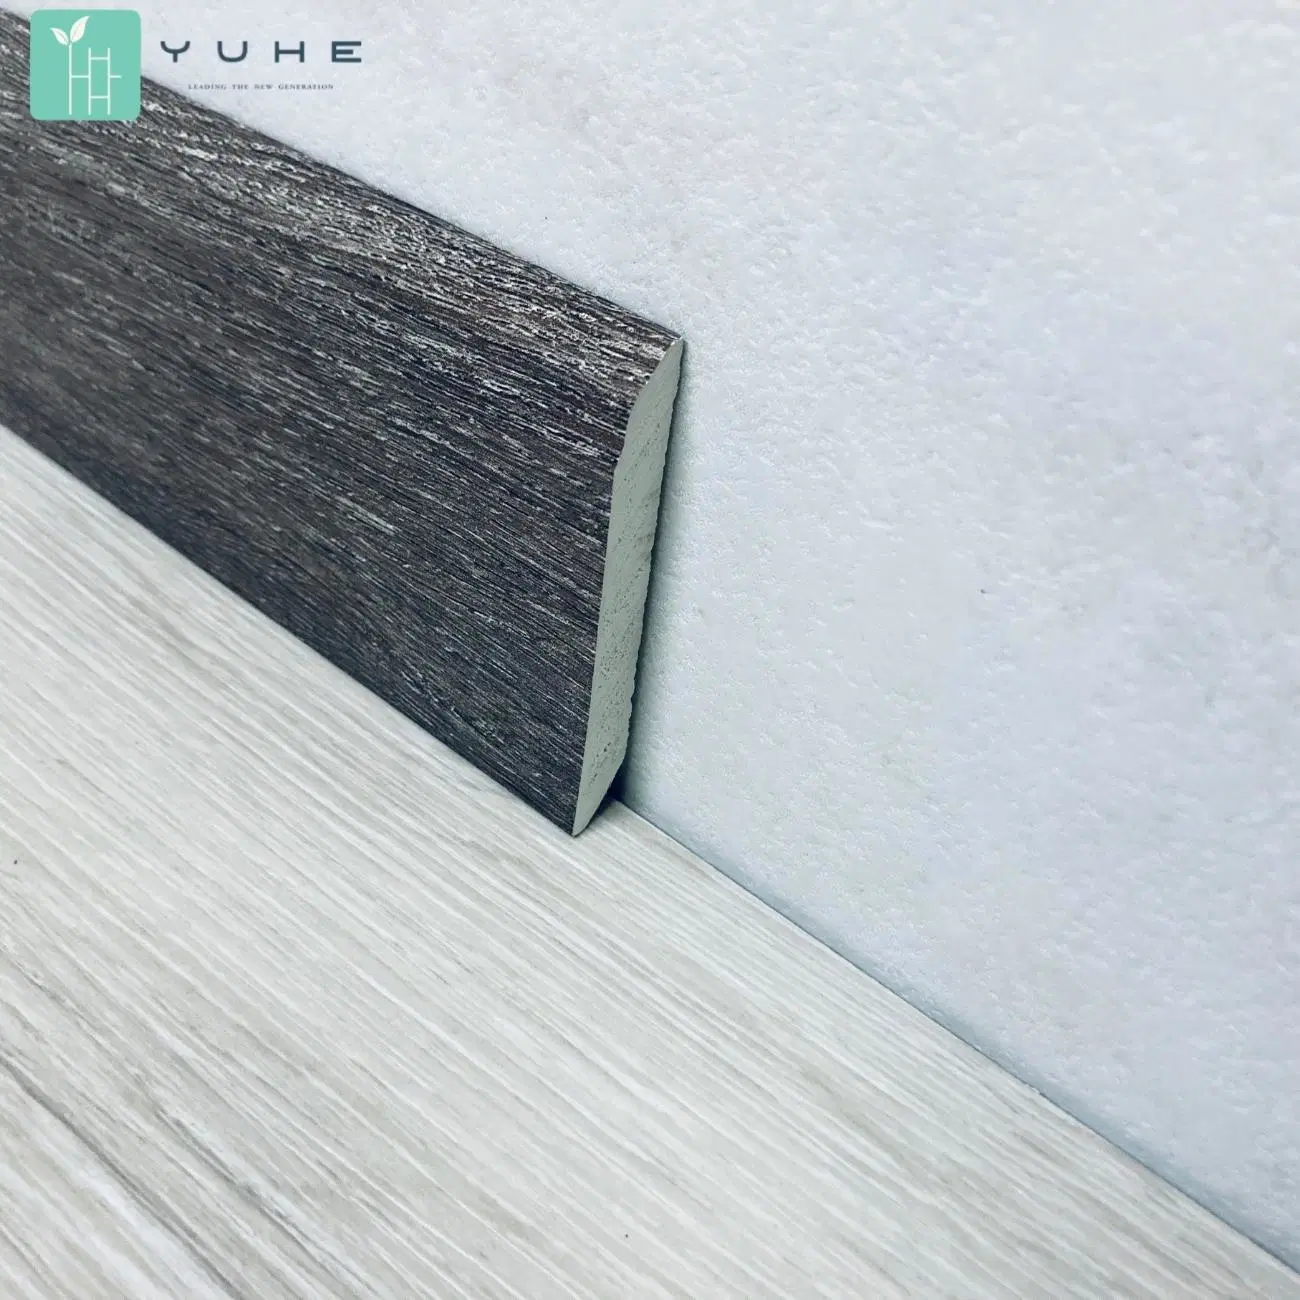 100% Waterproof & Anti-Slip Stone Plastic Floor Tile PVC Raw Material Wood & Marble Look Yh9013-5